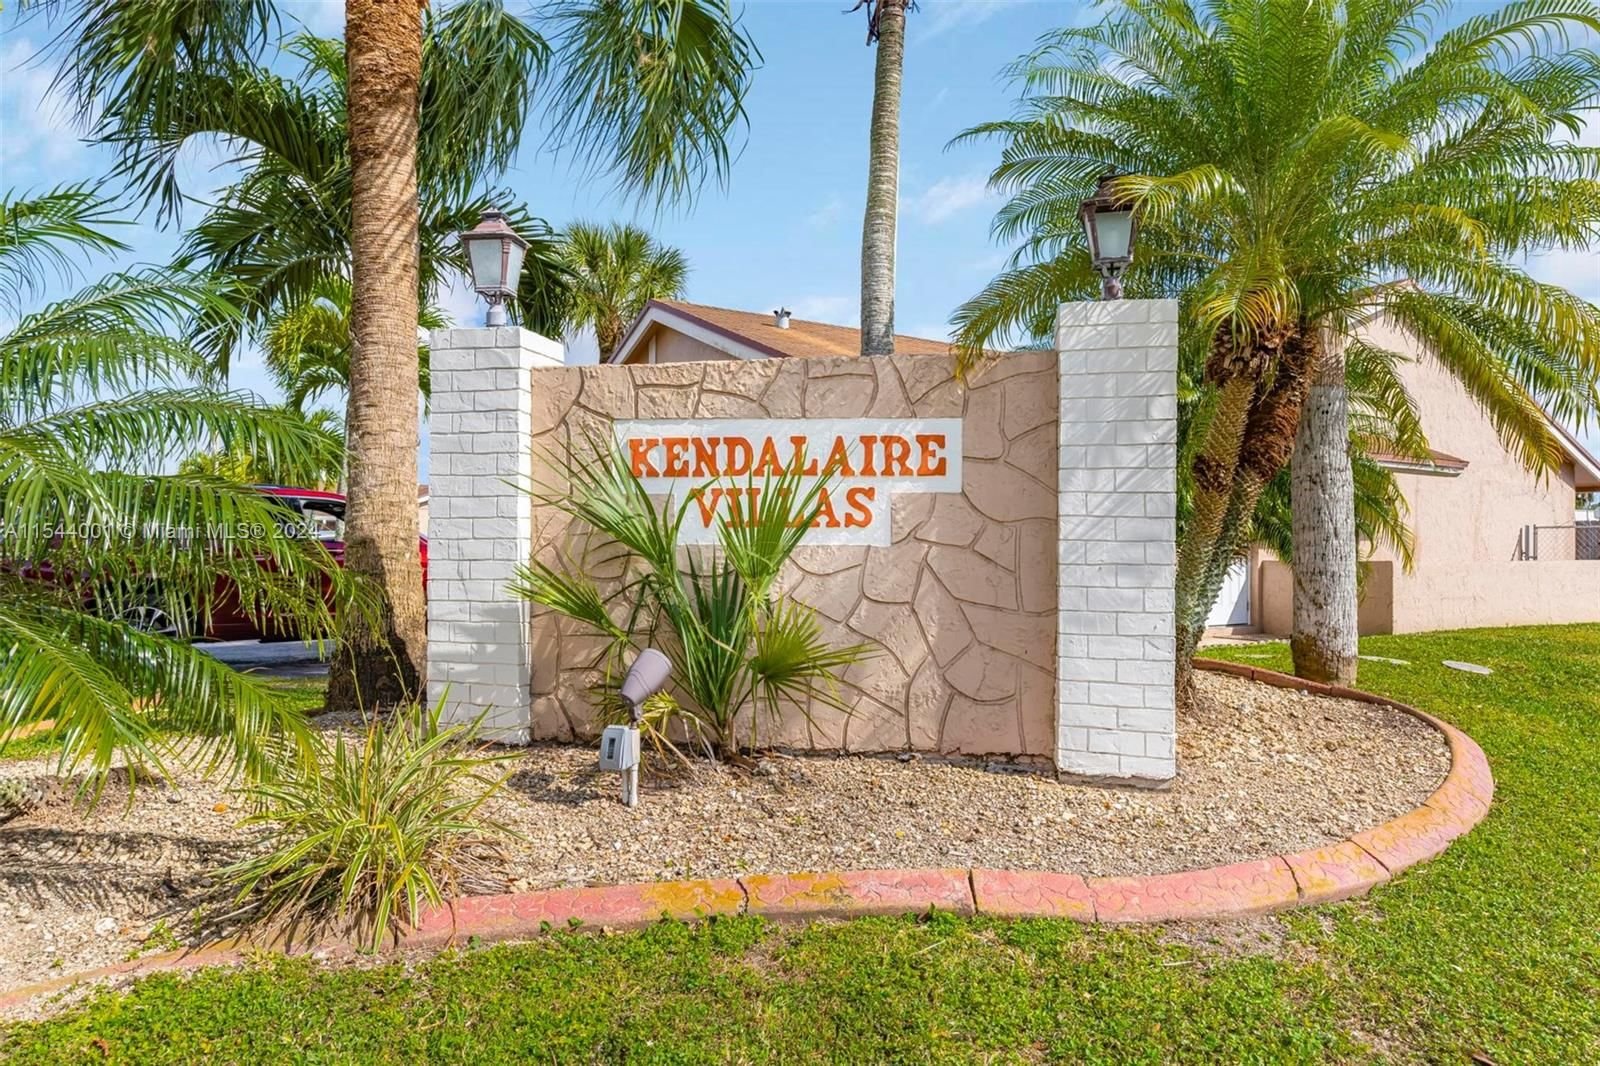 Real estate property located at 7730 156th Ct, Miami-Dade County, KENDALAIRE VILLAS CONDO, Miami, FL